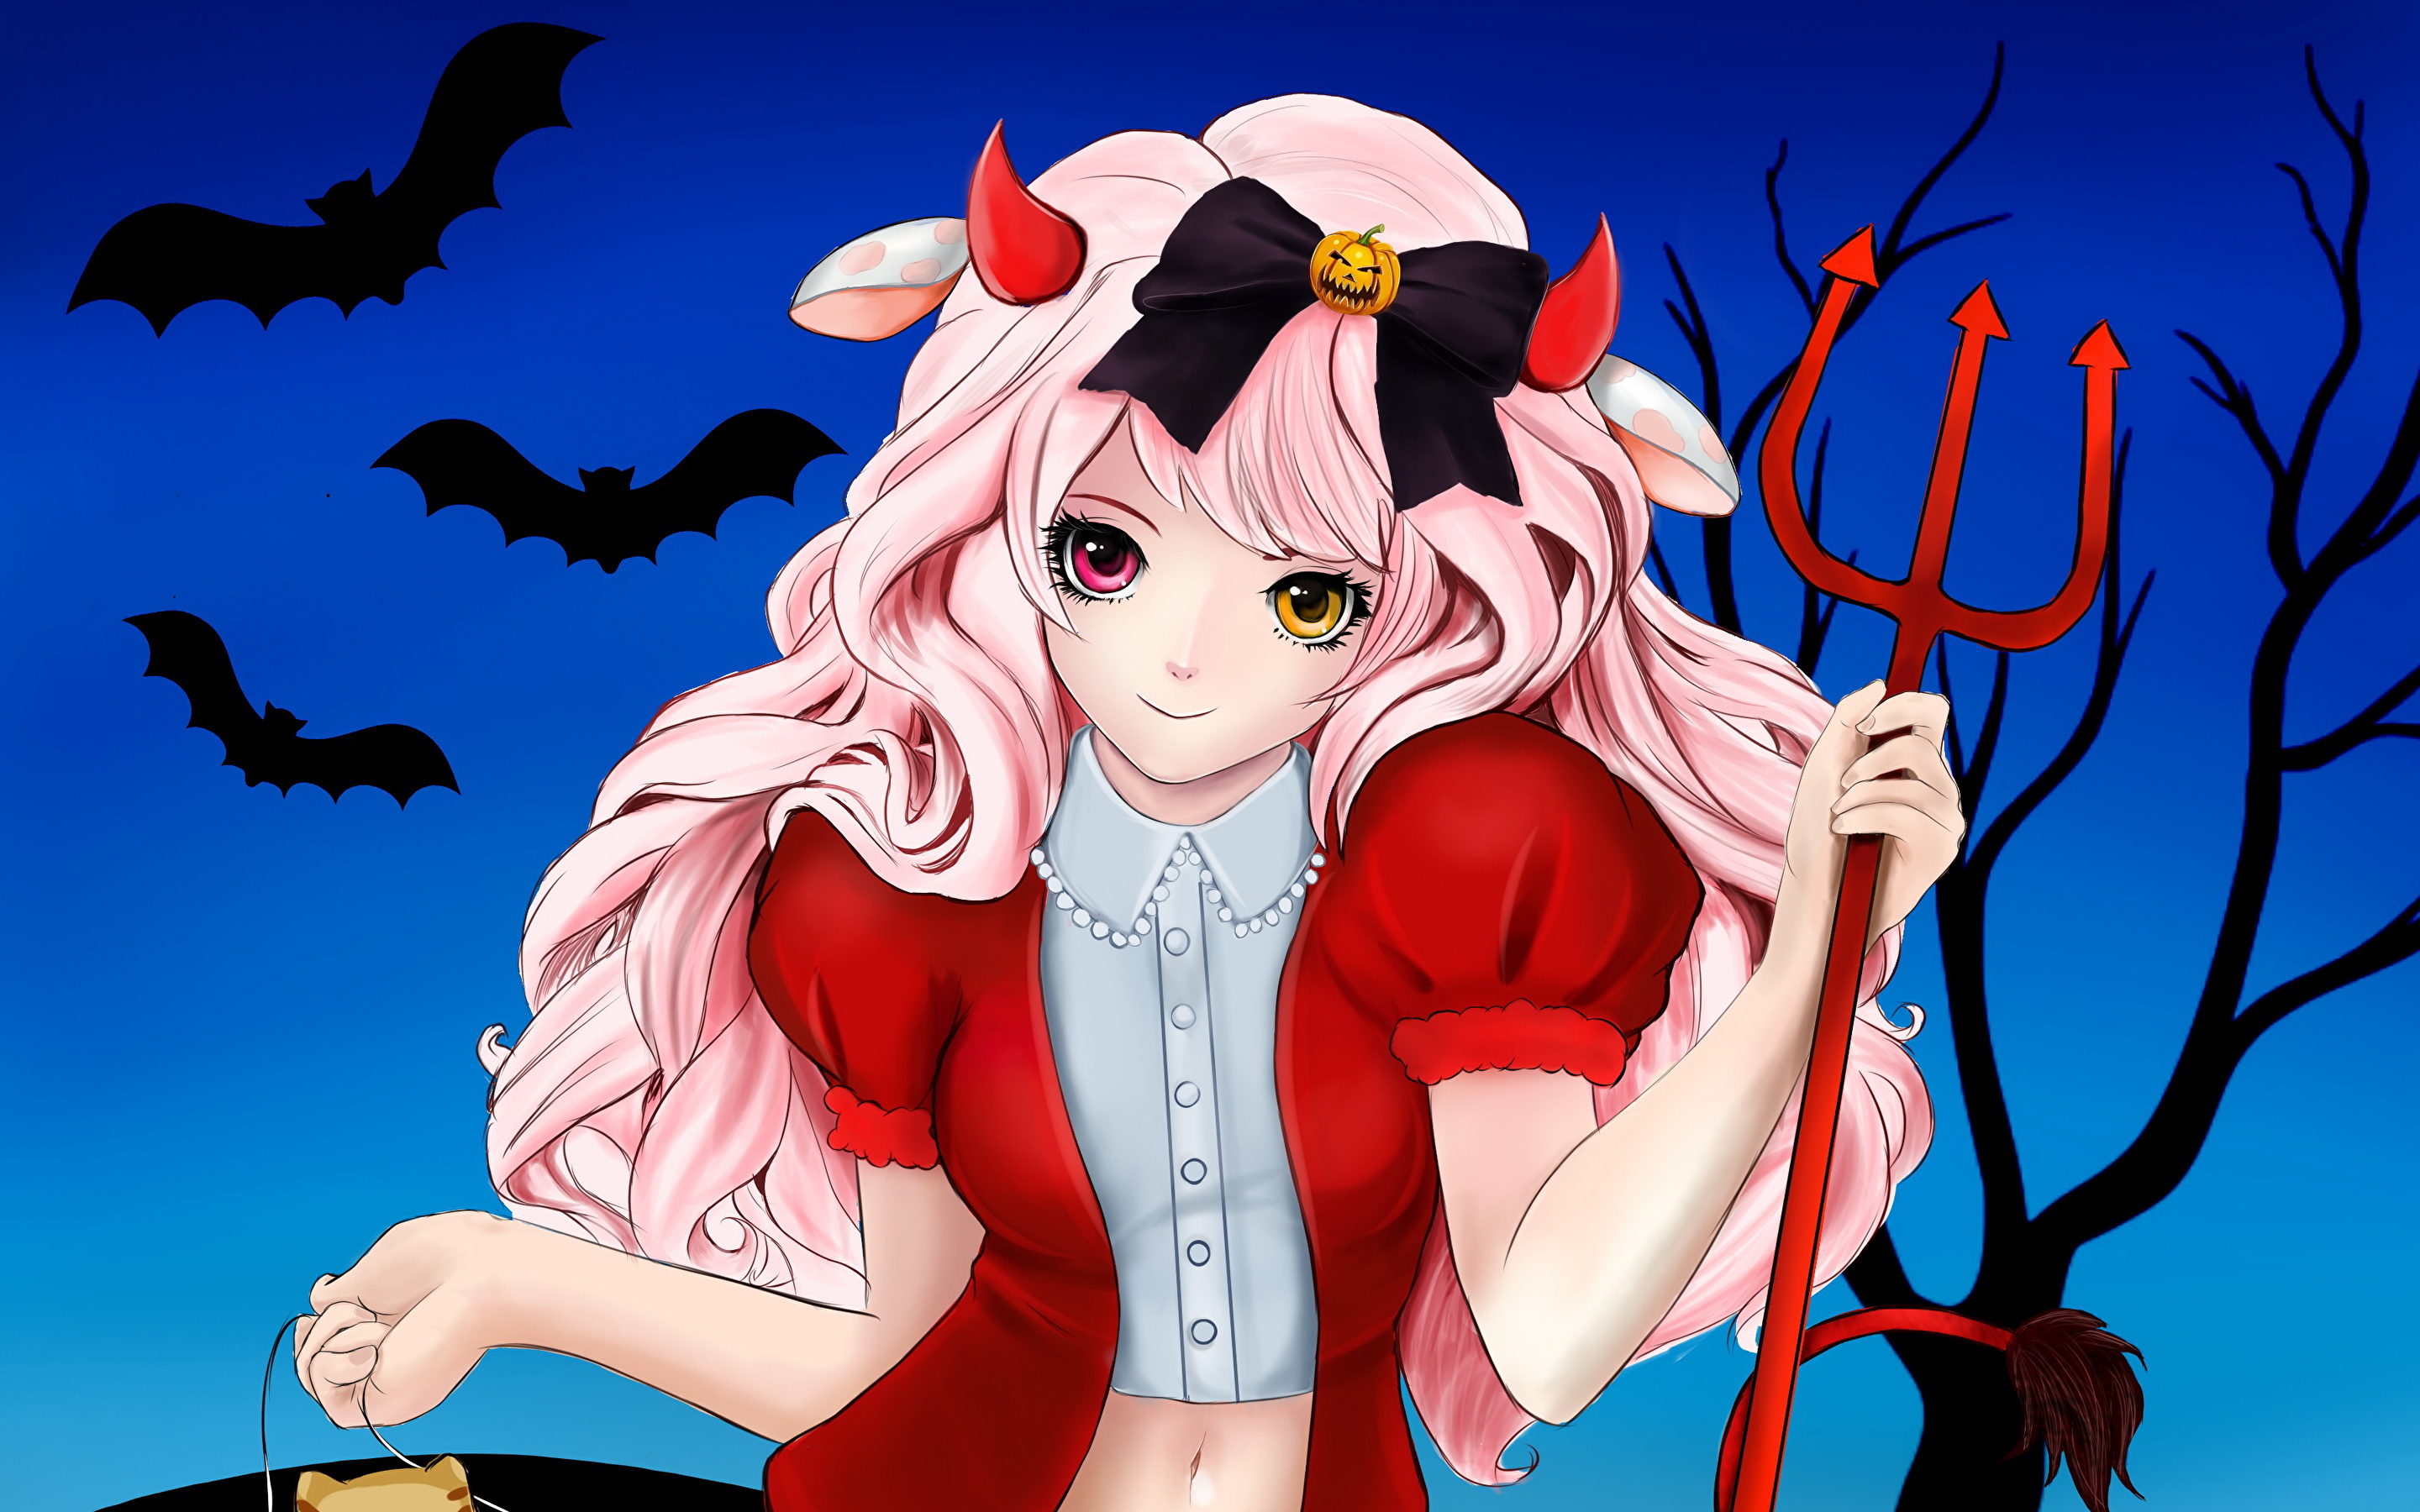 Anime girl halloween costume